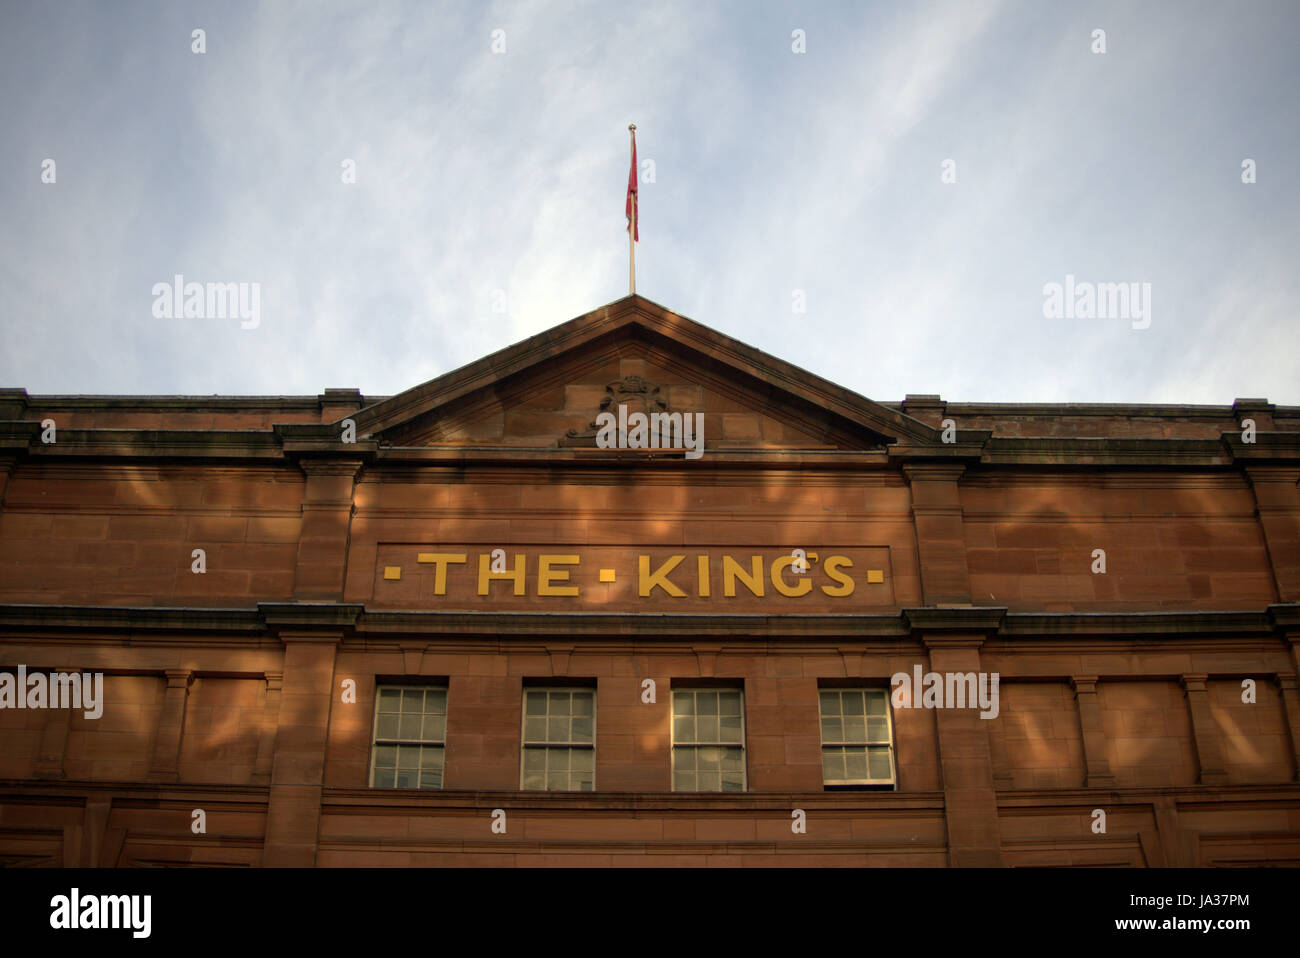 Kings Theatre Glasgow Gebäude mit Losal Namen "The Kings" Stockfoto